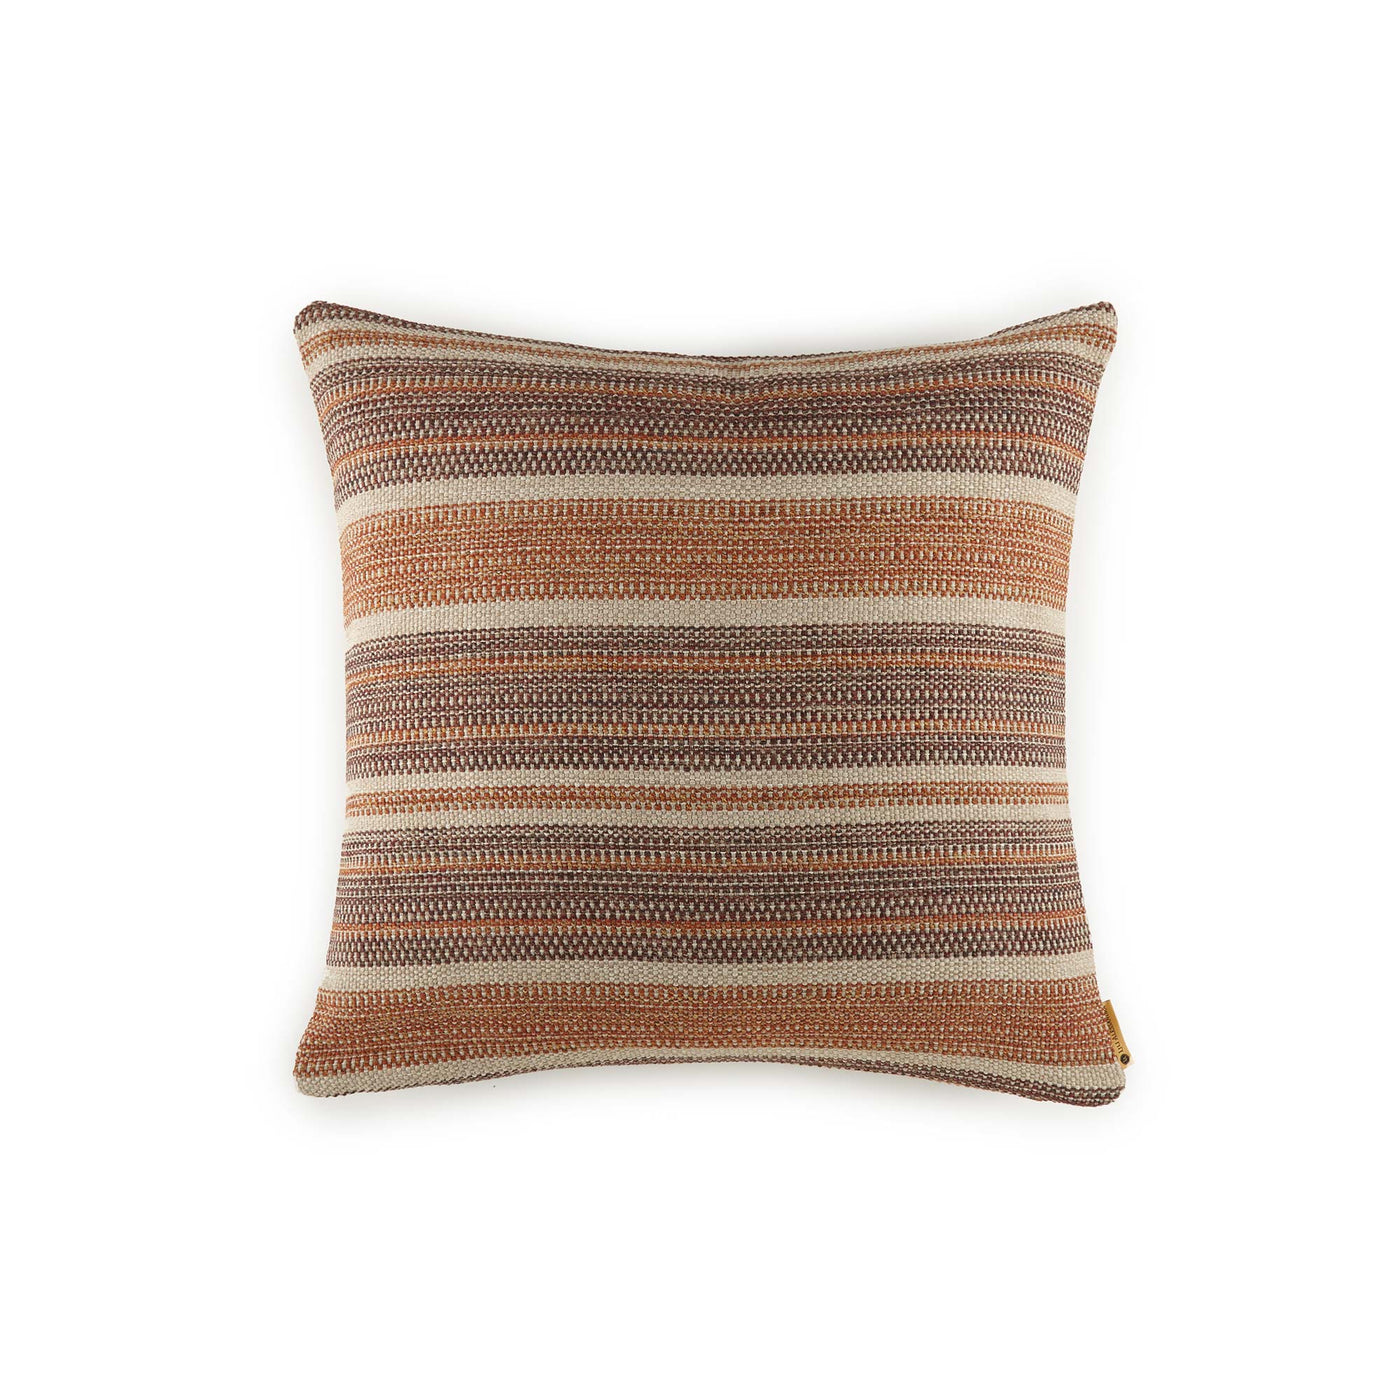 Macario Desert Euro Pillow (26x26)